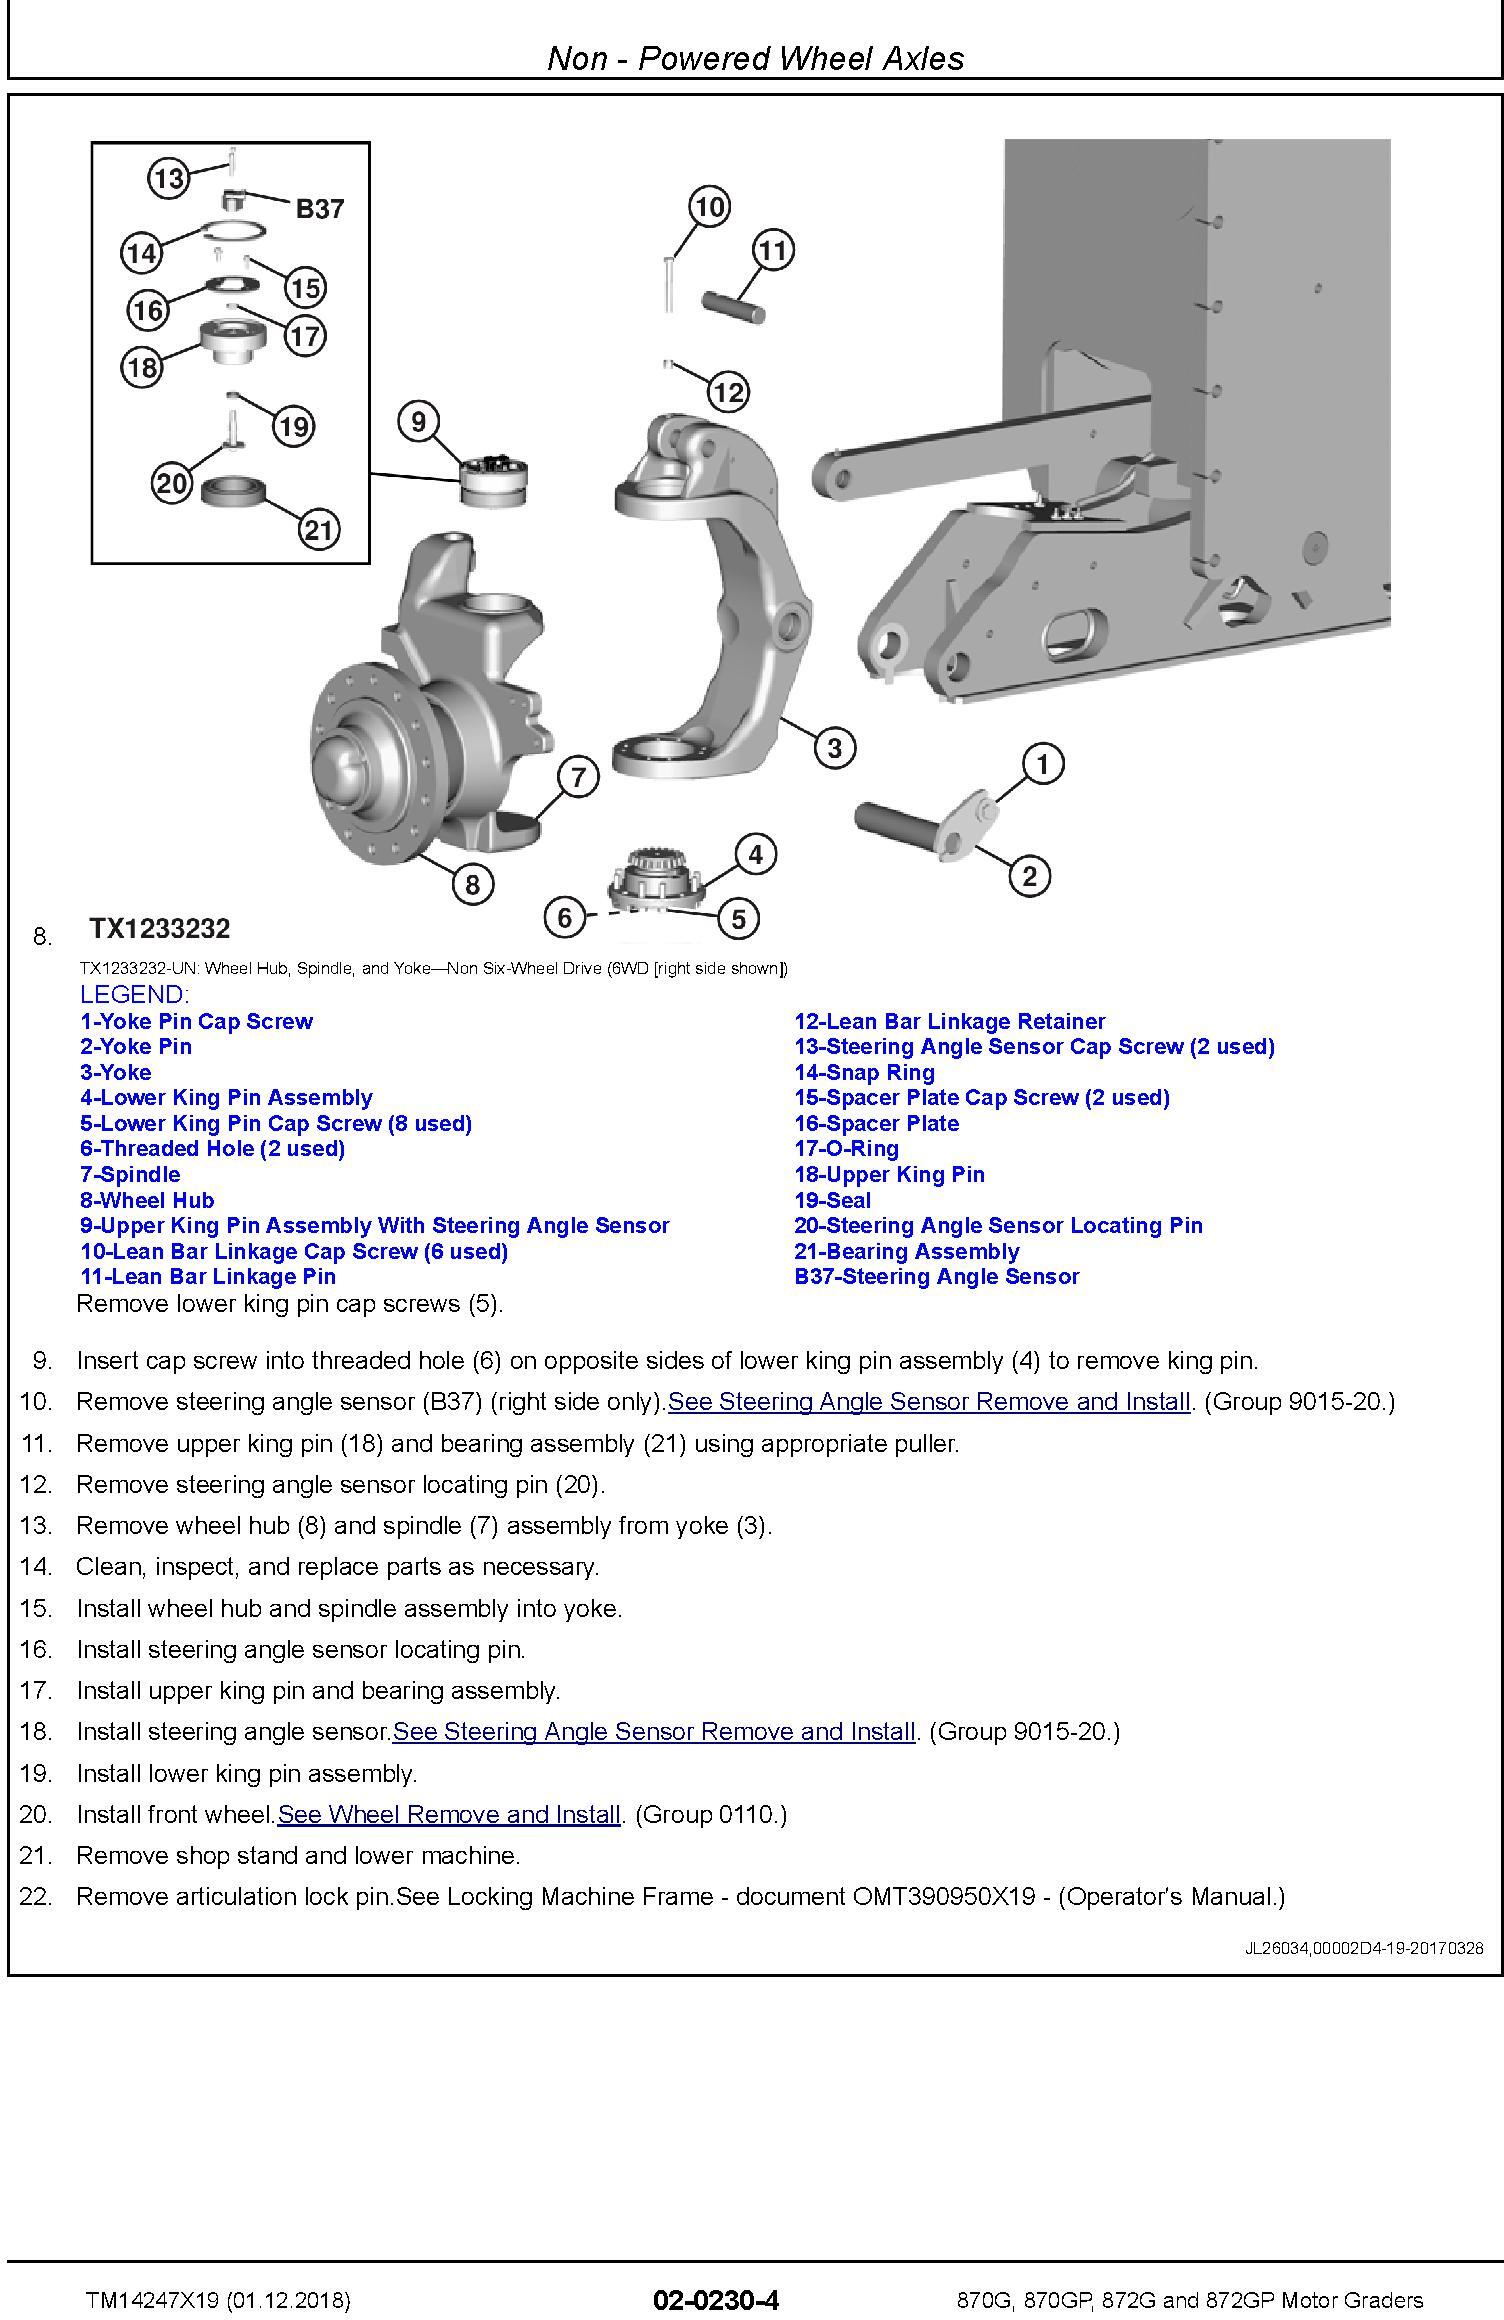 John Deere 870G, 870GP, 872G, 872GP (SN. F680878-,L700954-) Motor Graders Repair Manual (TM14247X19) - 1